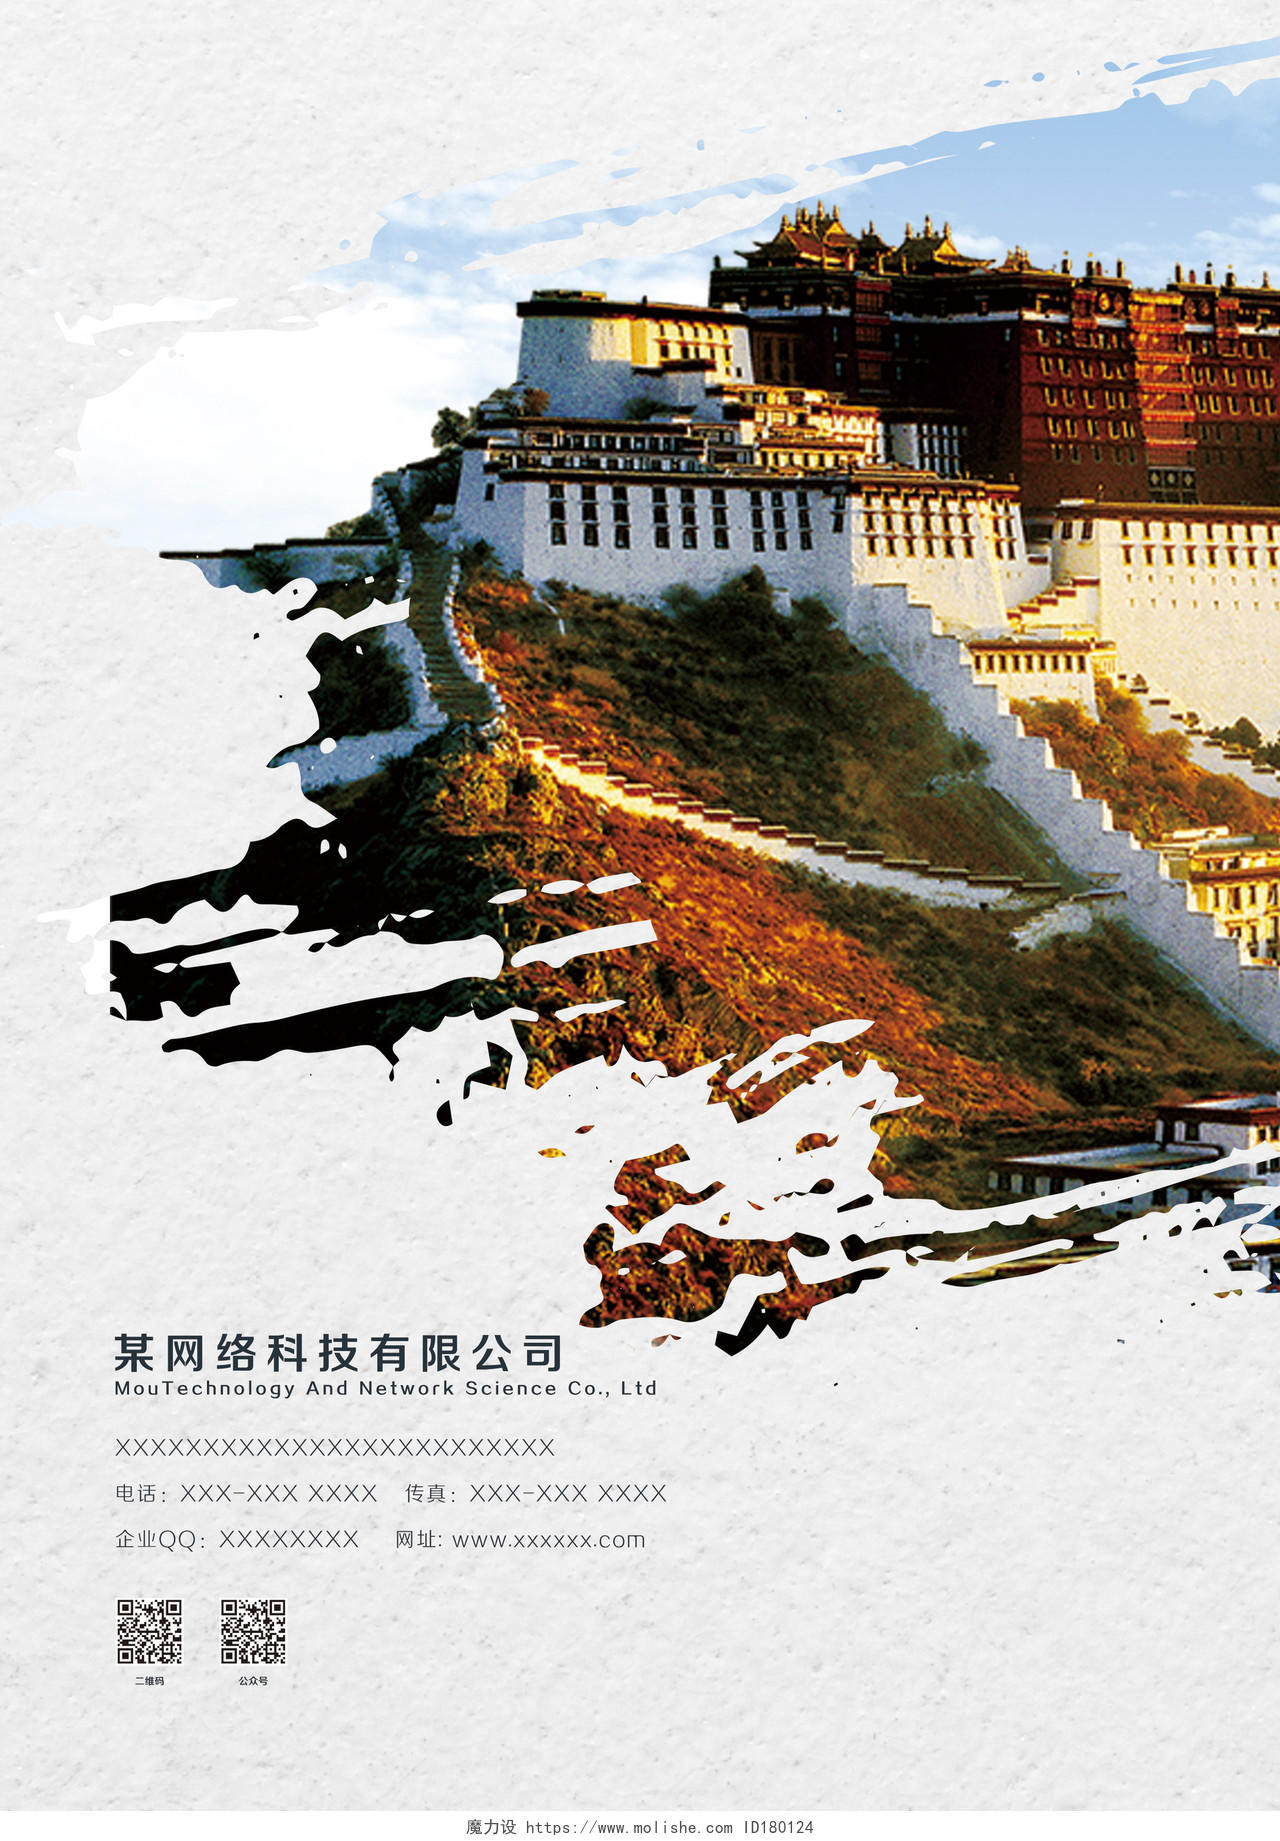 简约大气旅游画册走进西藏旅游画册封面